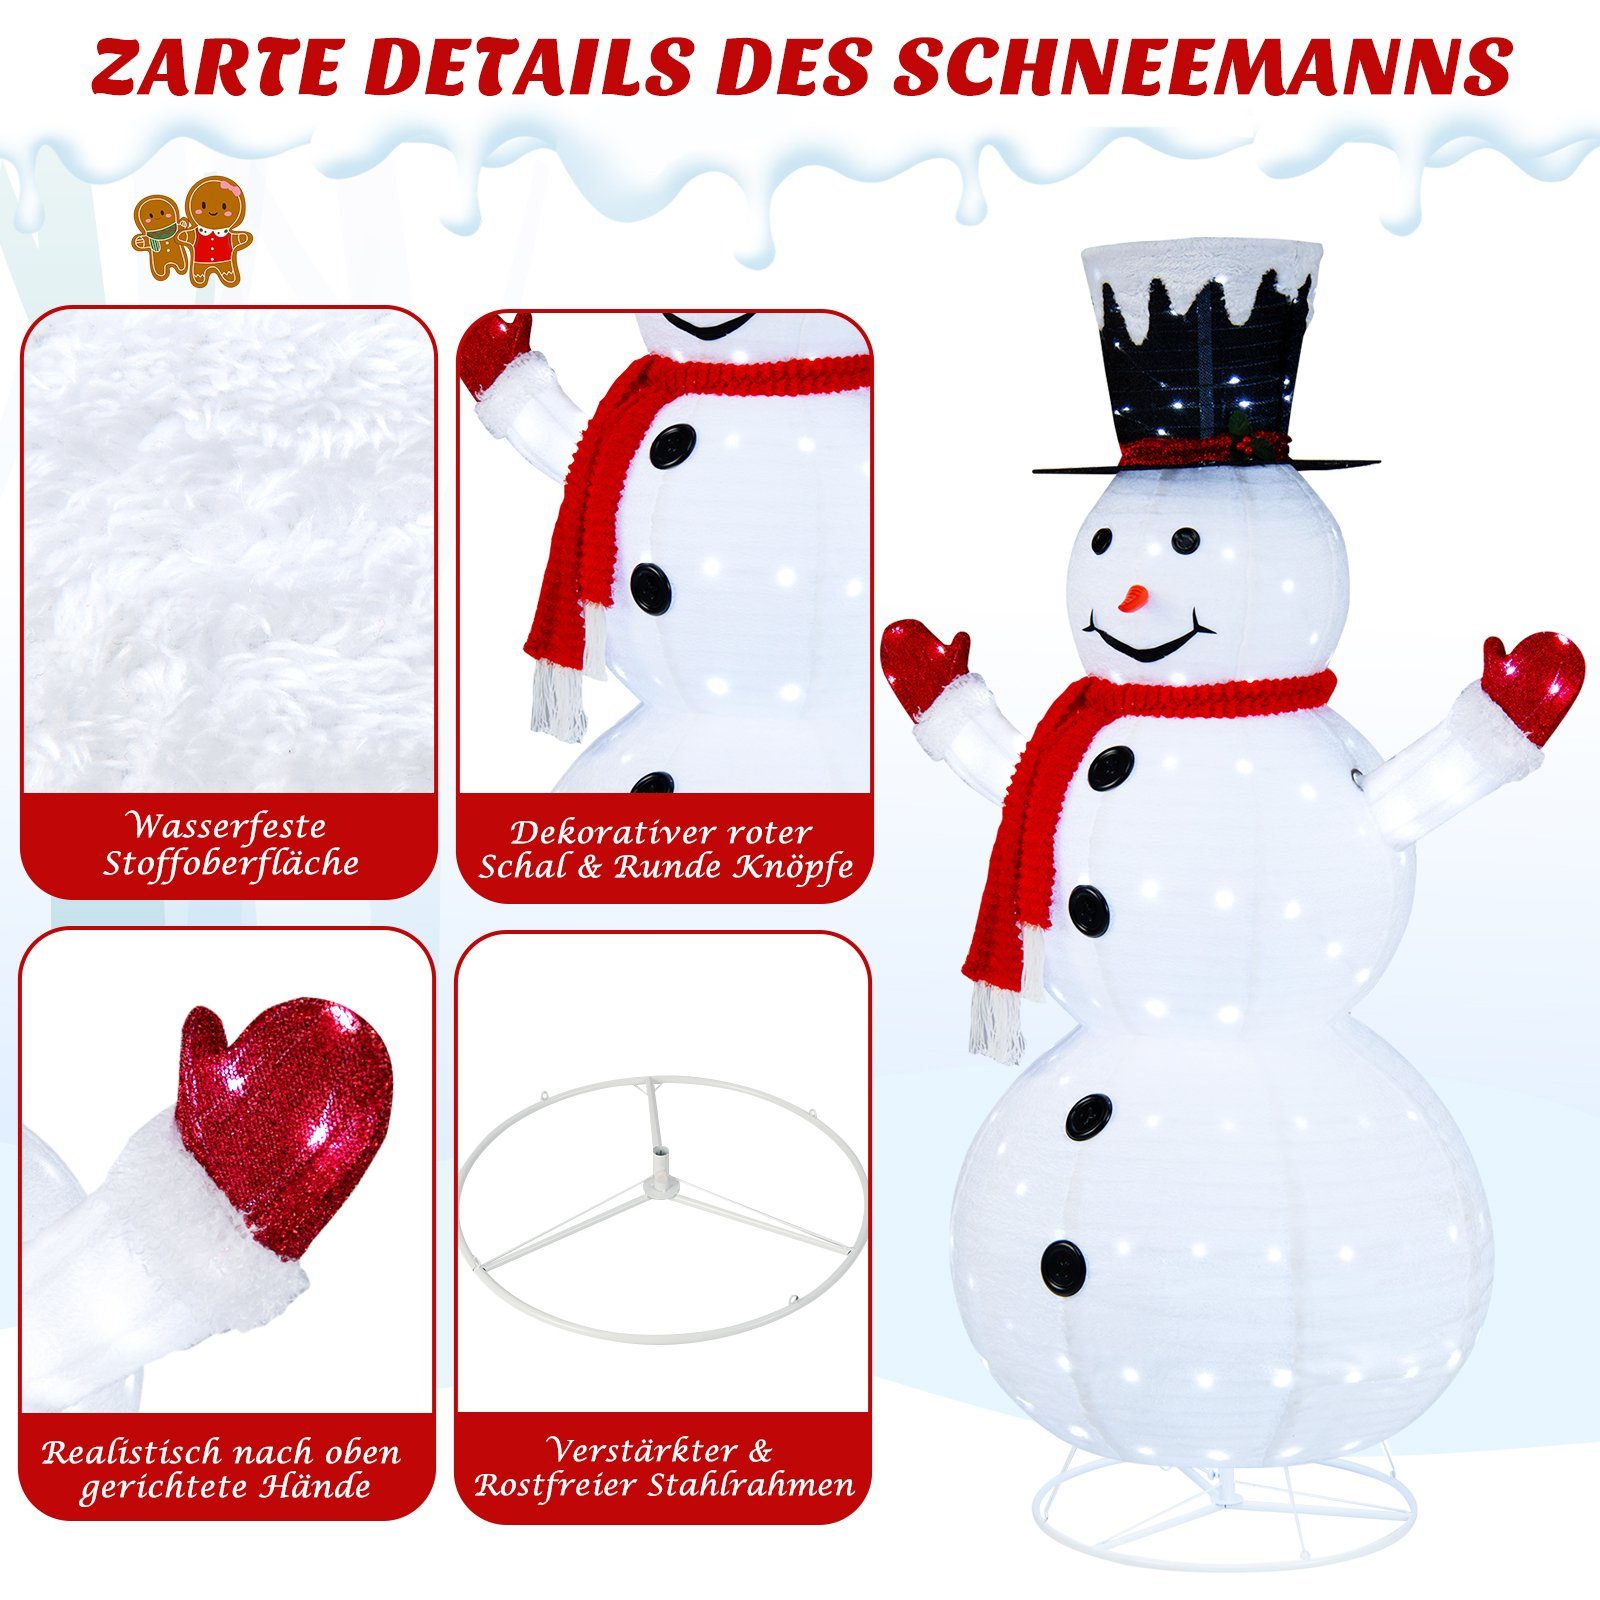 COSTWAY klappbar Schneemann, LEDs, Weihnachtsfigur, kaltweiße 200